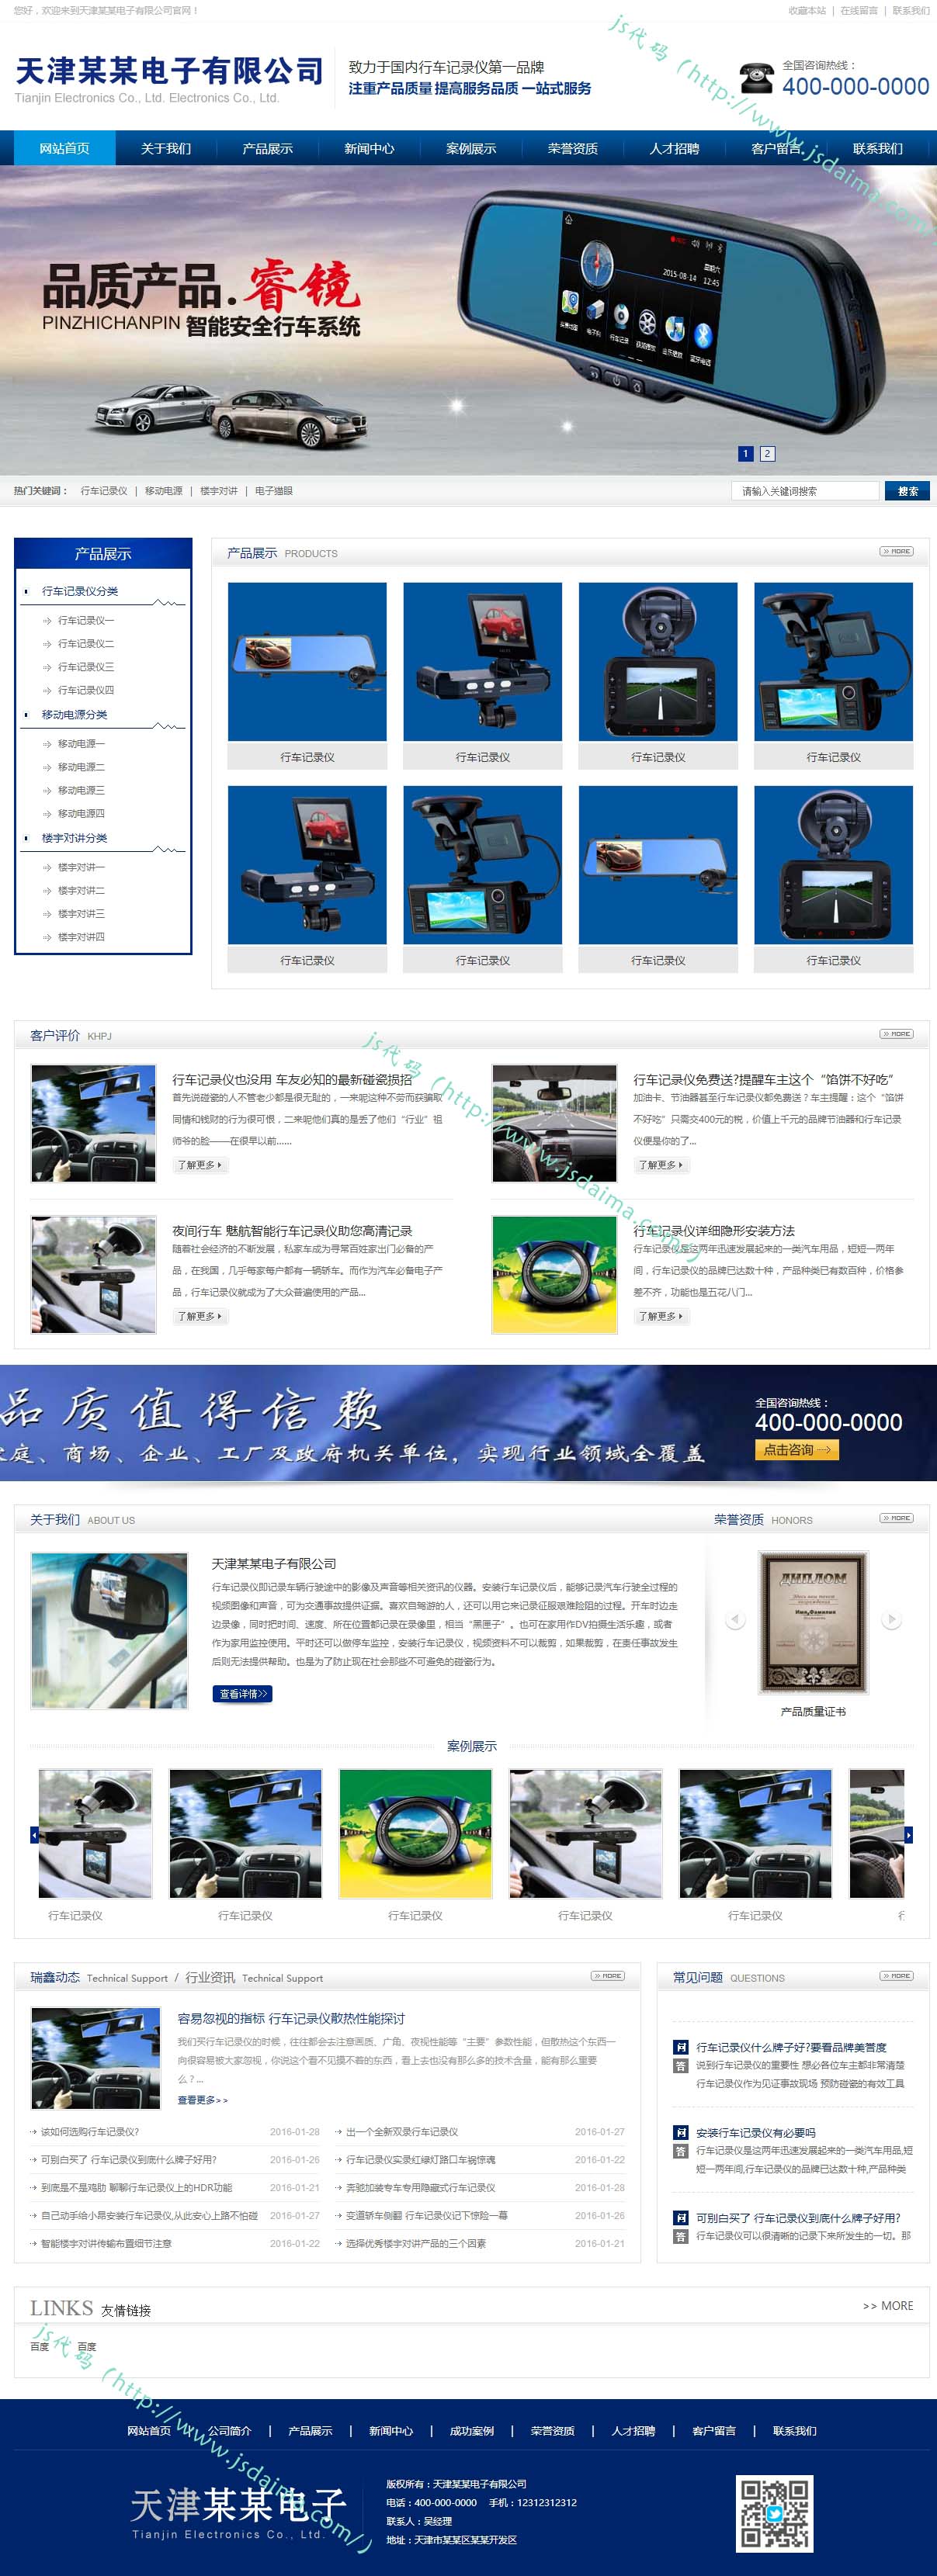 蓝色简洁大气行车记录仪电子产品科技公司网站模板下载